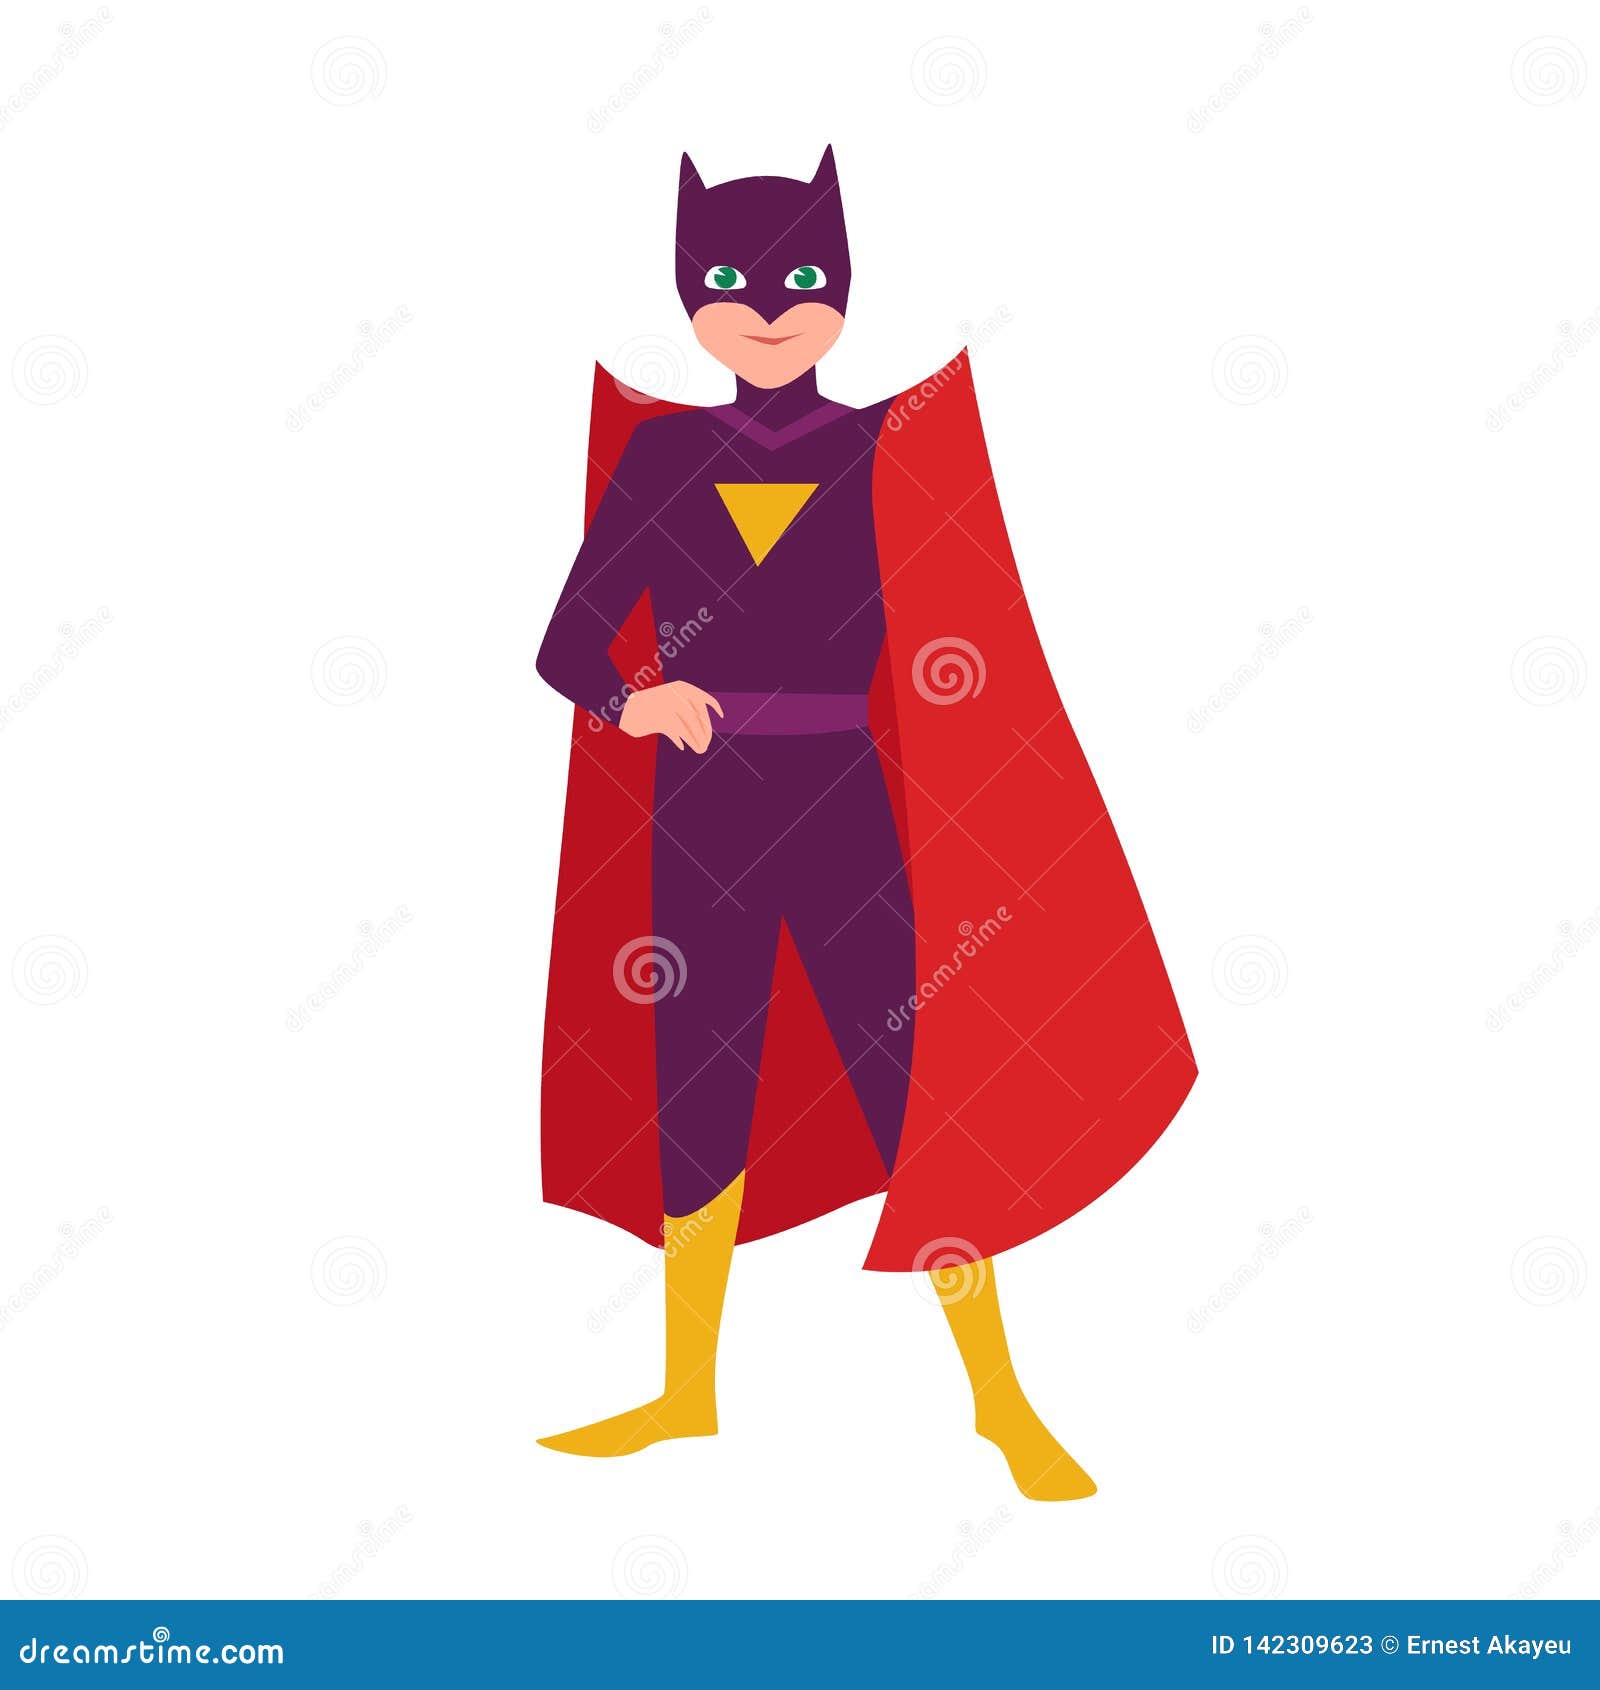 batboy. teenage kid in bat costume standing in heroic pose. fantastic child hero with super power. teen superhero